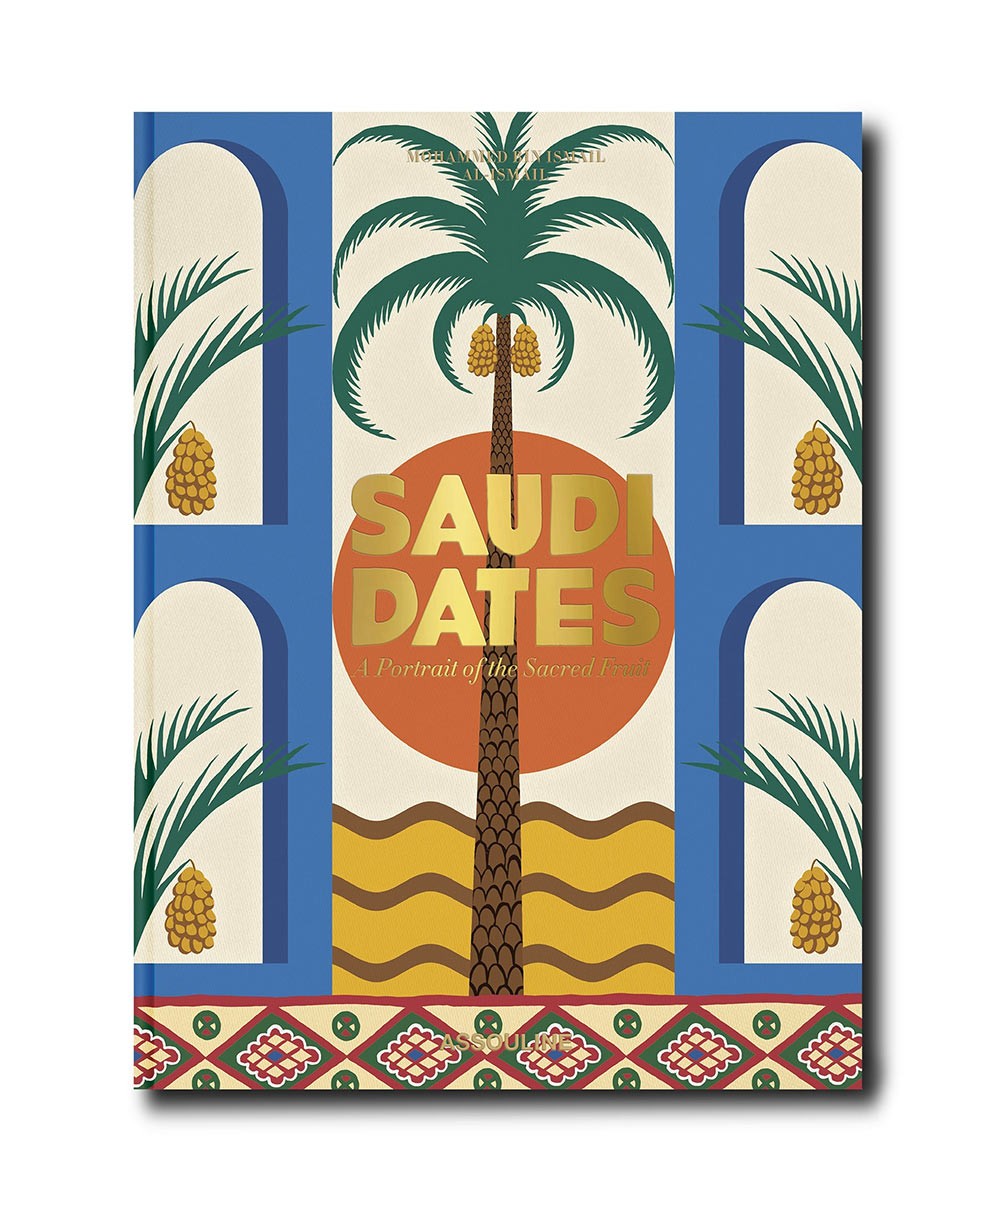 Produktbild des Coffee Table Books „Saudi Dates: A Portrait of the Sacred Fruit“ von Assouline im RAUM concept store 